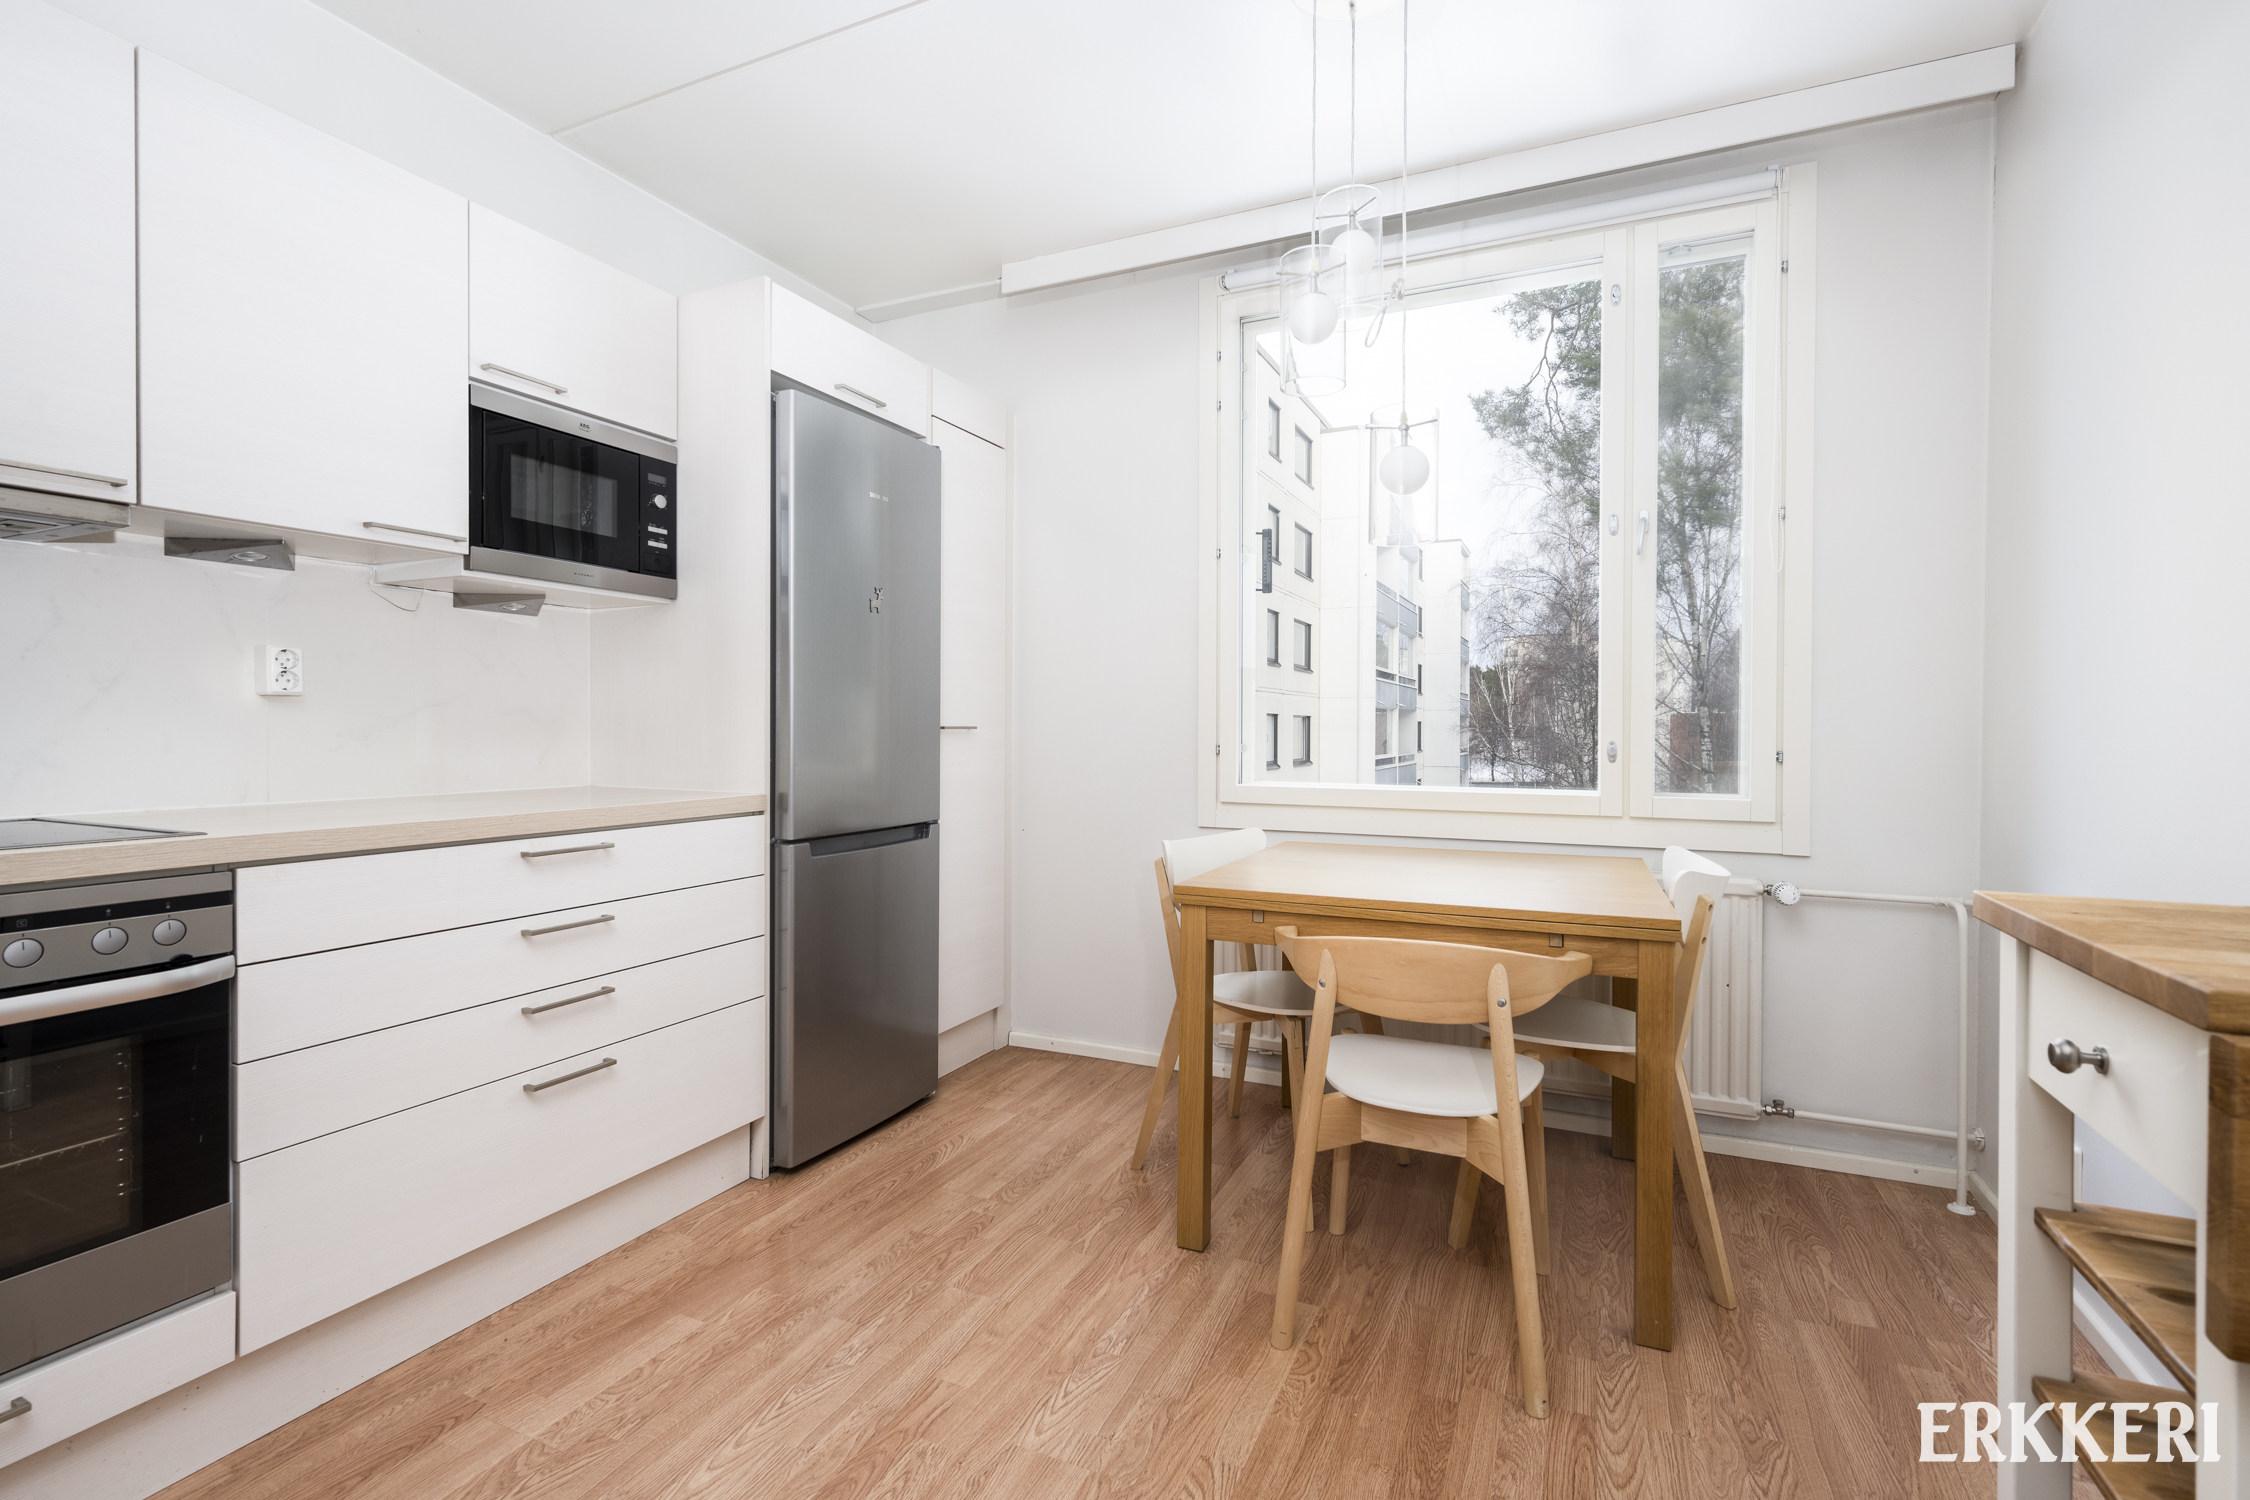 Kalustettu kolmio Matinkylässä / furnished apartment in Matinkylä